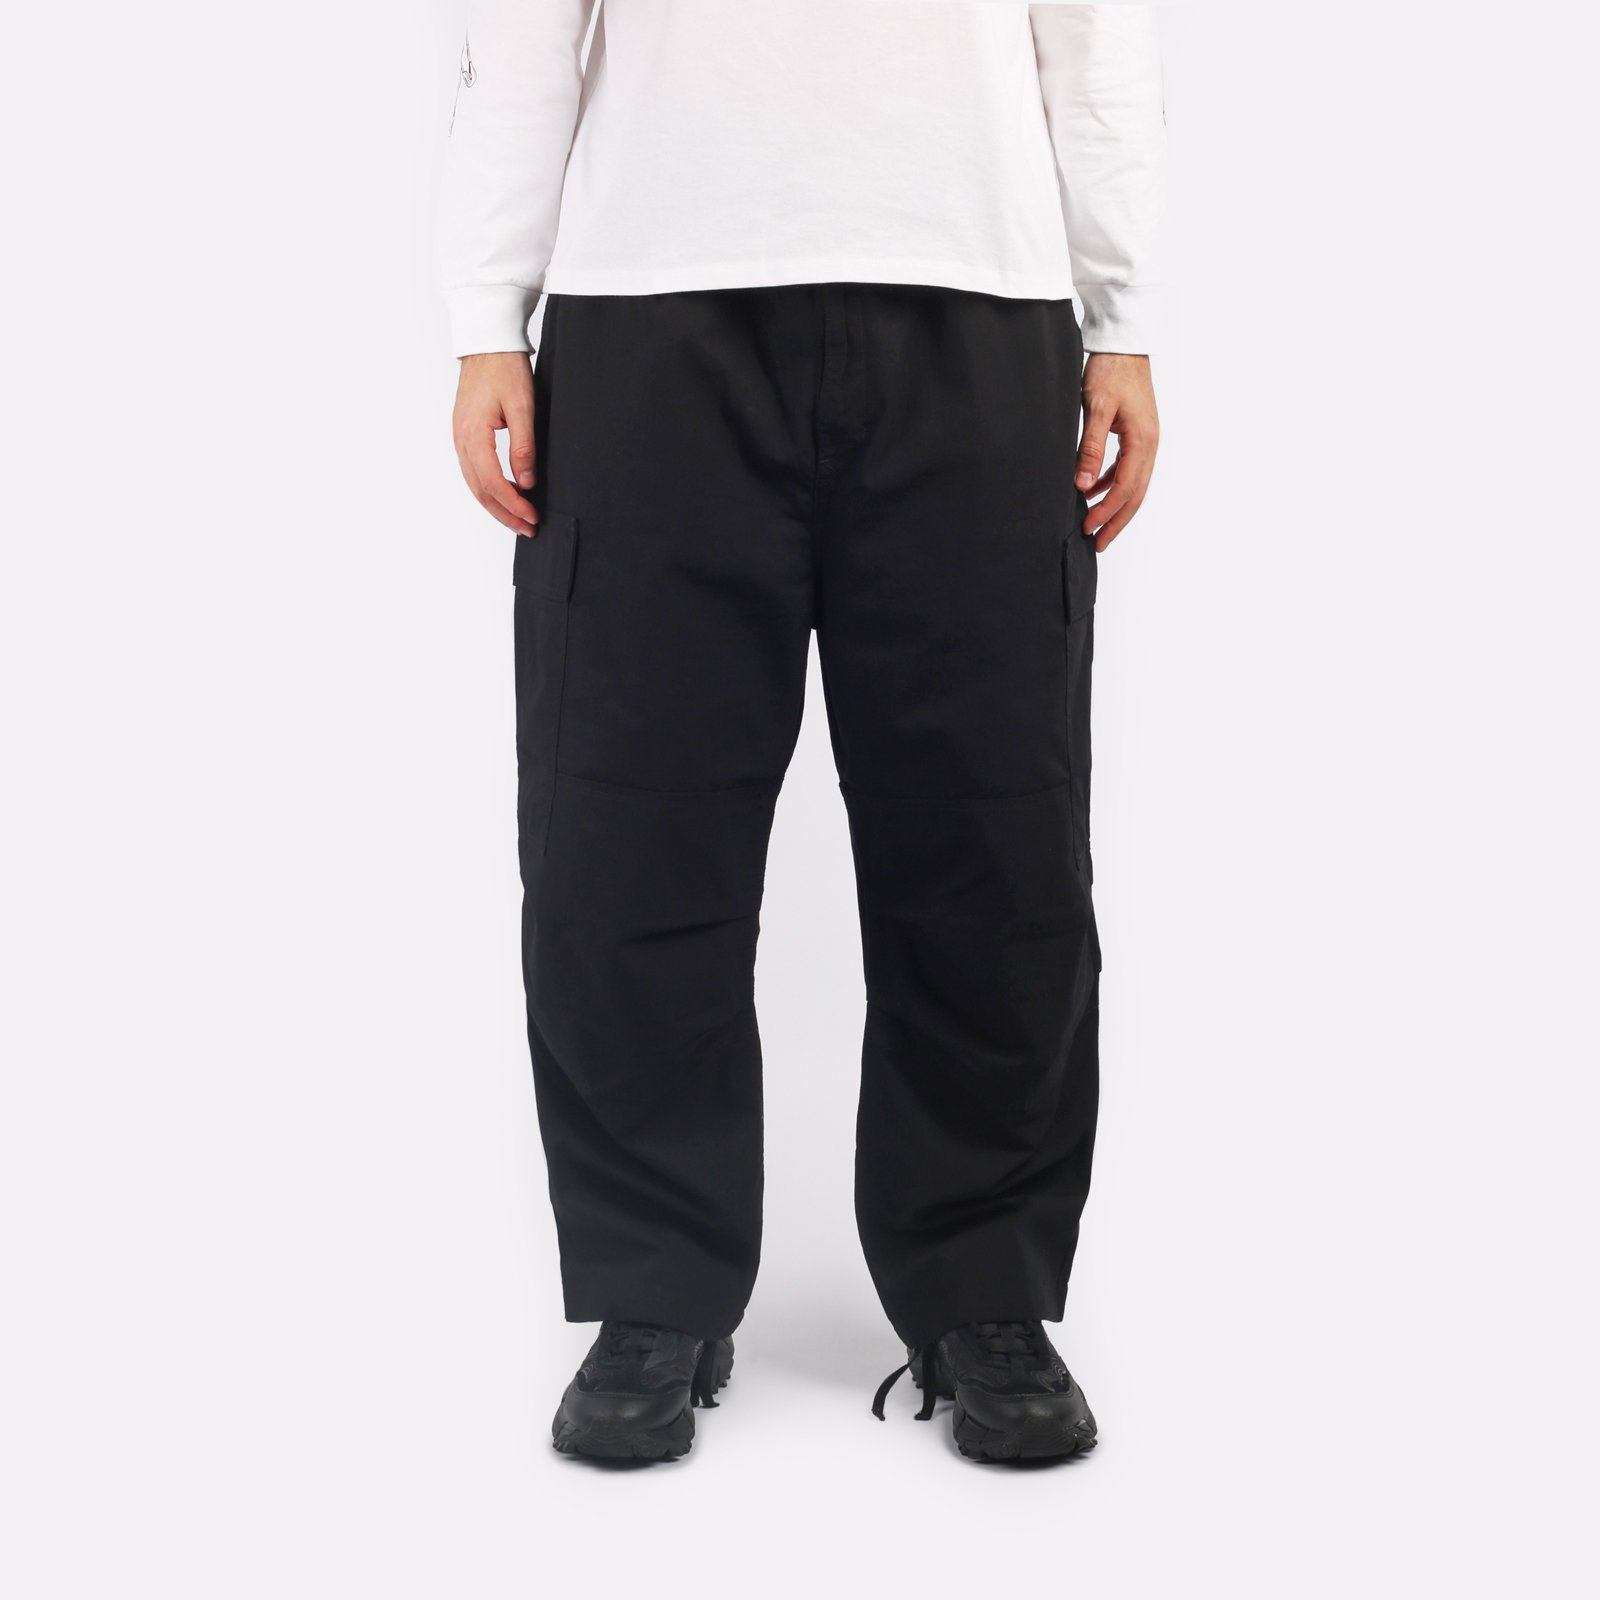 мужские черные брюки Carhartt WIP Jet Cargo Pant I032967-black - цена, описание, фото 1